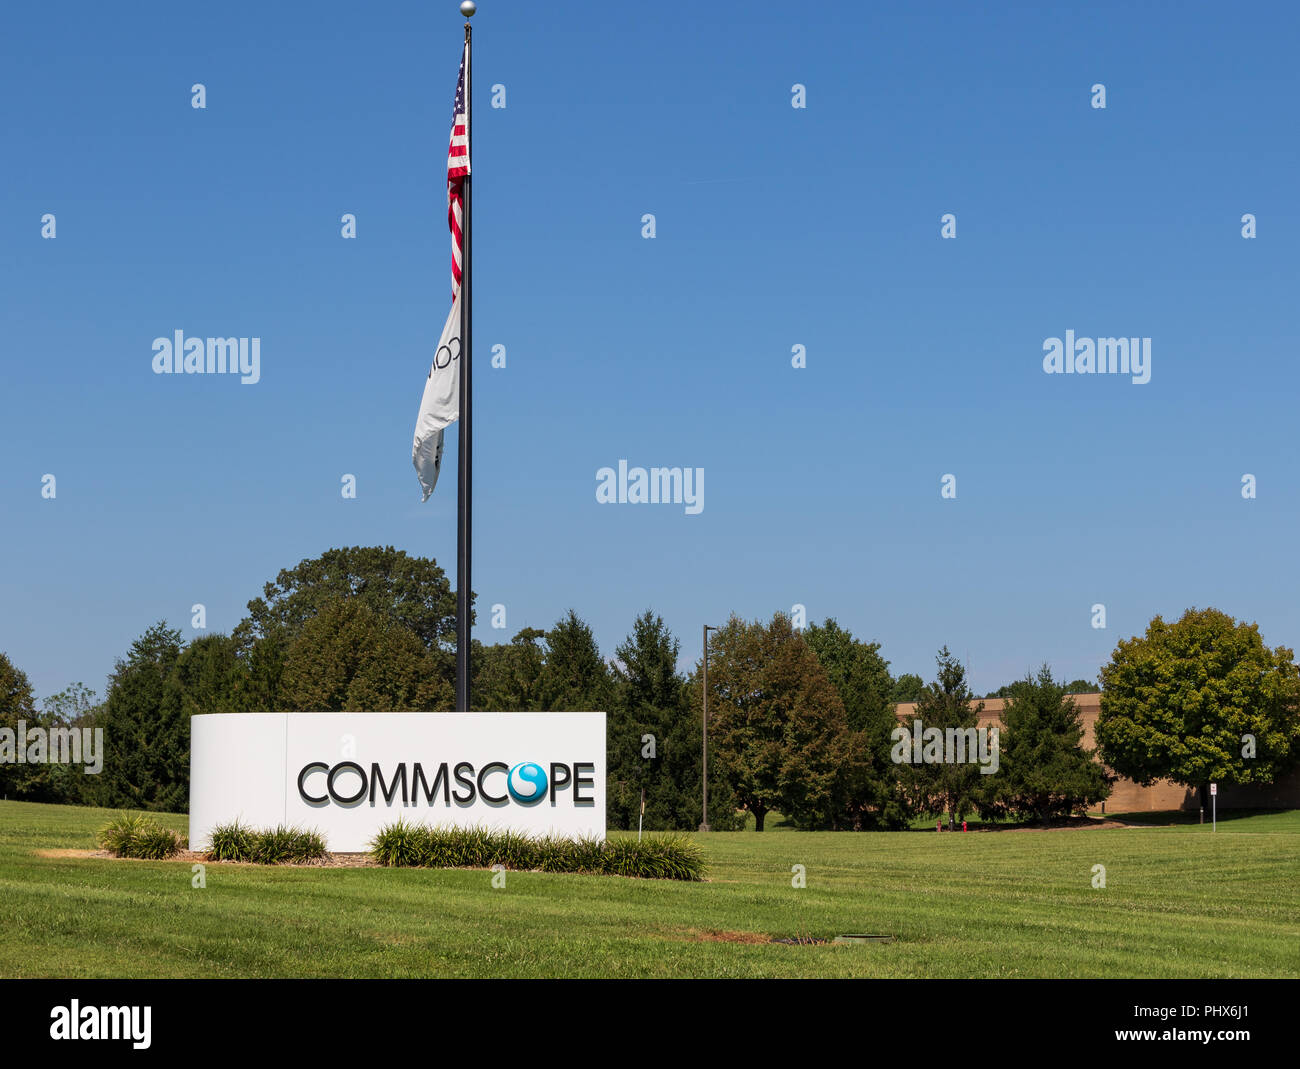 CATAWBA, NC, EE.UU.--8/31/18: Signo, bandera y motivos de Catawba facilidad de Commscope, Fabr. de cable y otros componentes de la infraestructura. Foto de stock